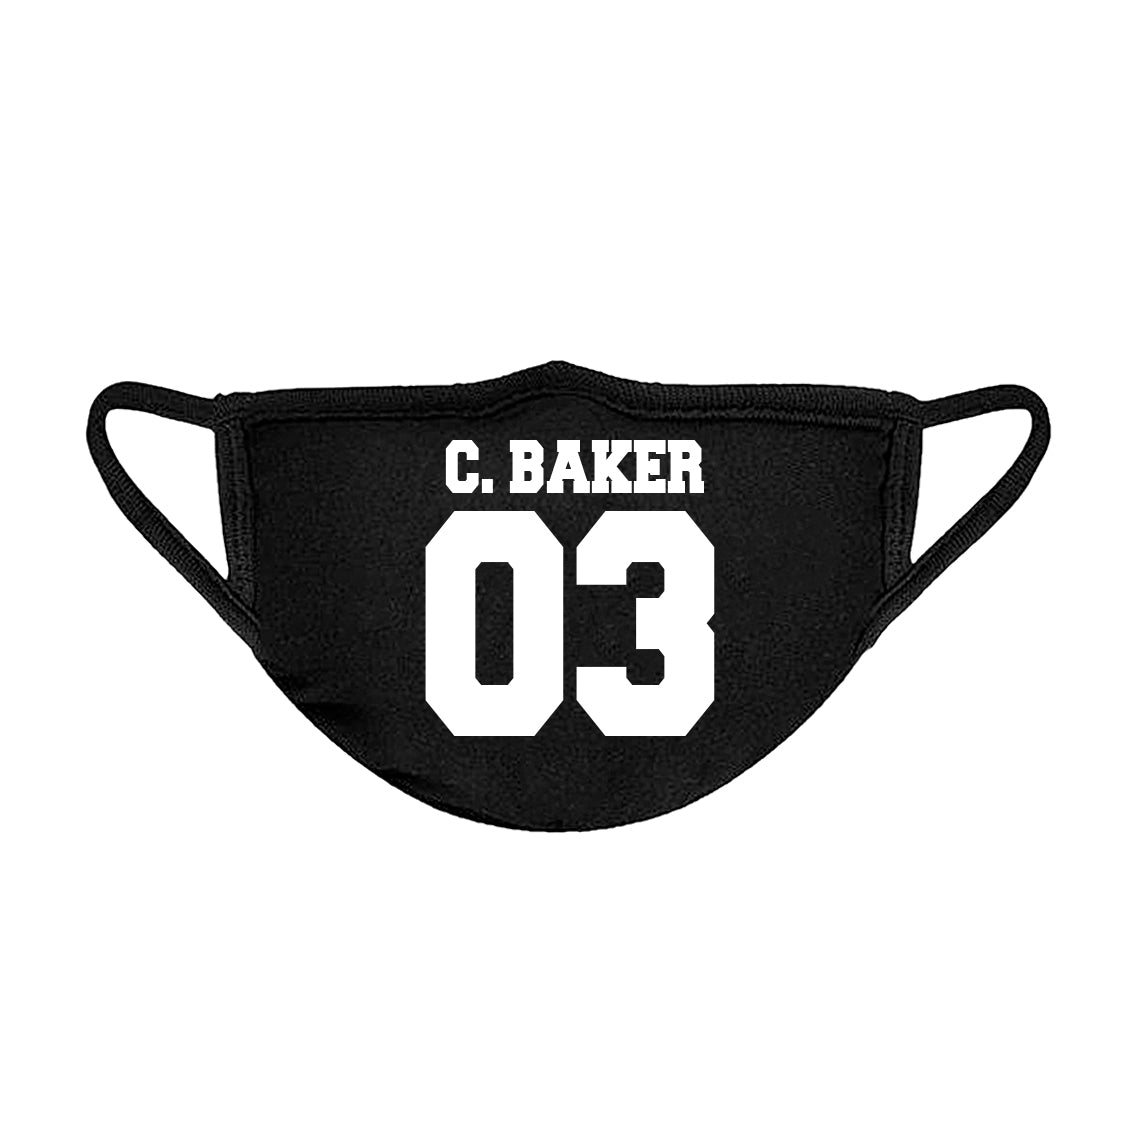 C. BAKER 03 Unisex Face Mask